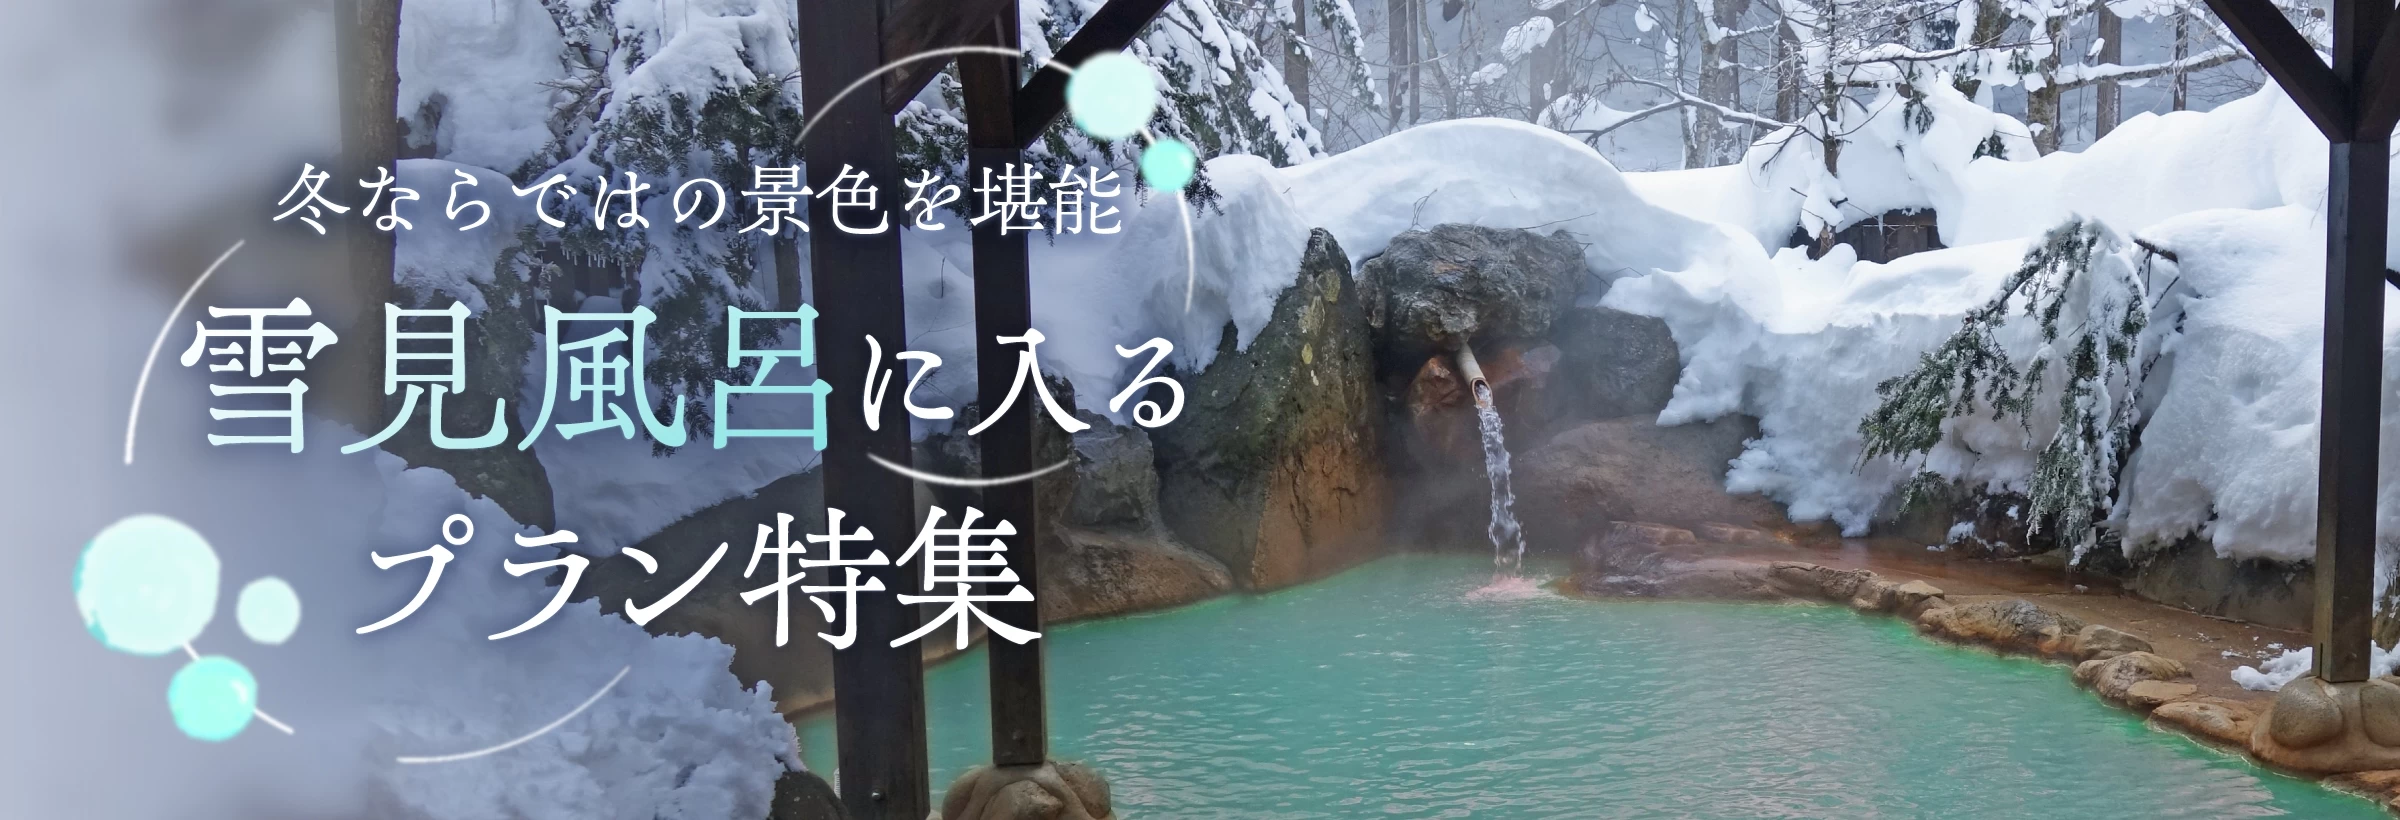 【全国】雪見風呂に入るプラン特集